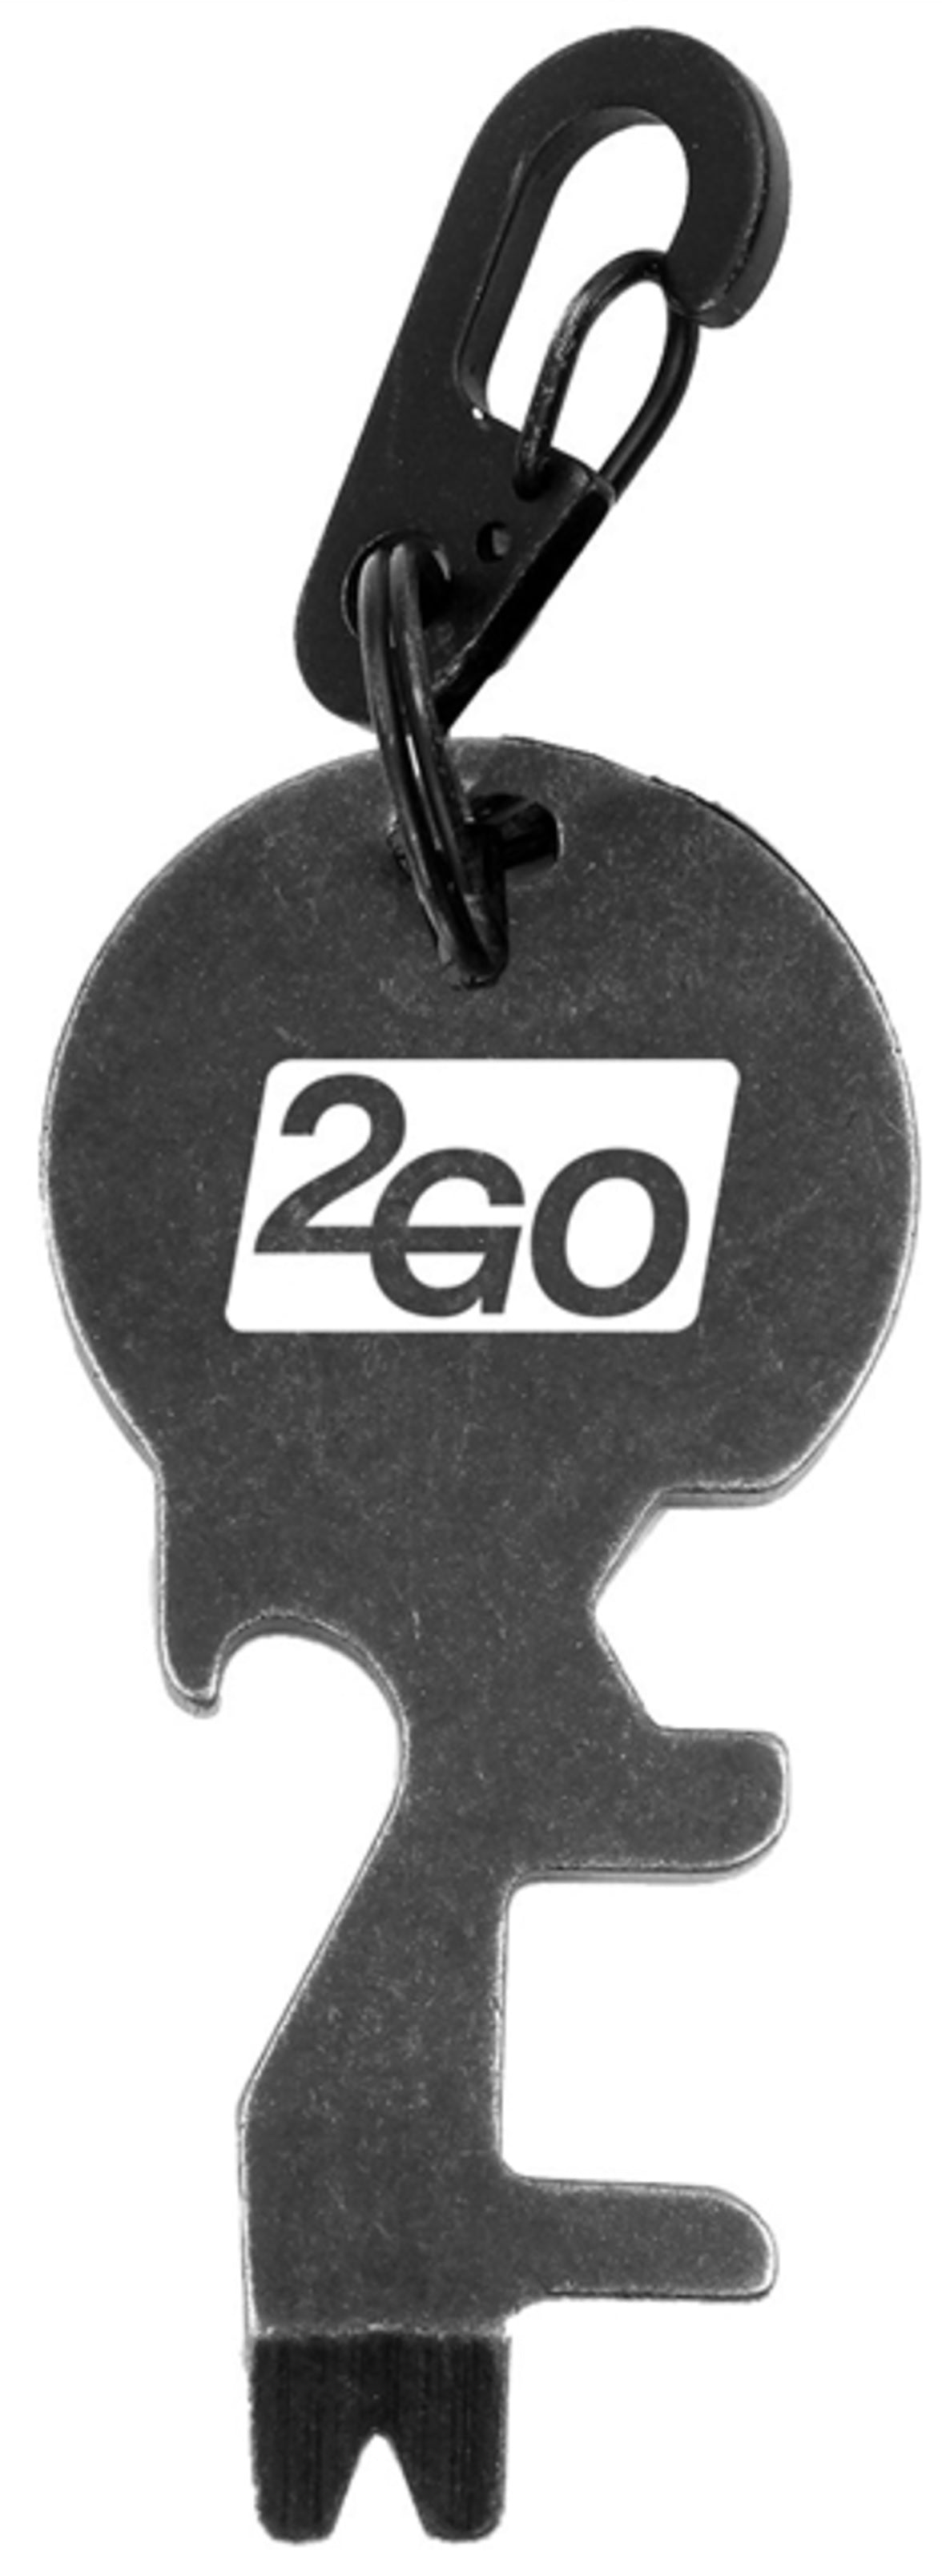 Hy-Ko KC620 2GO Key Shape Multi-Tool Bottle Opener